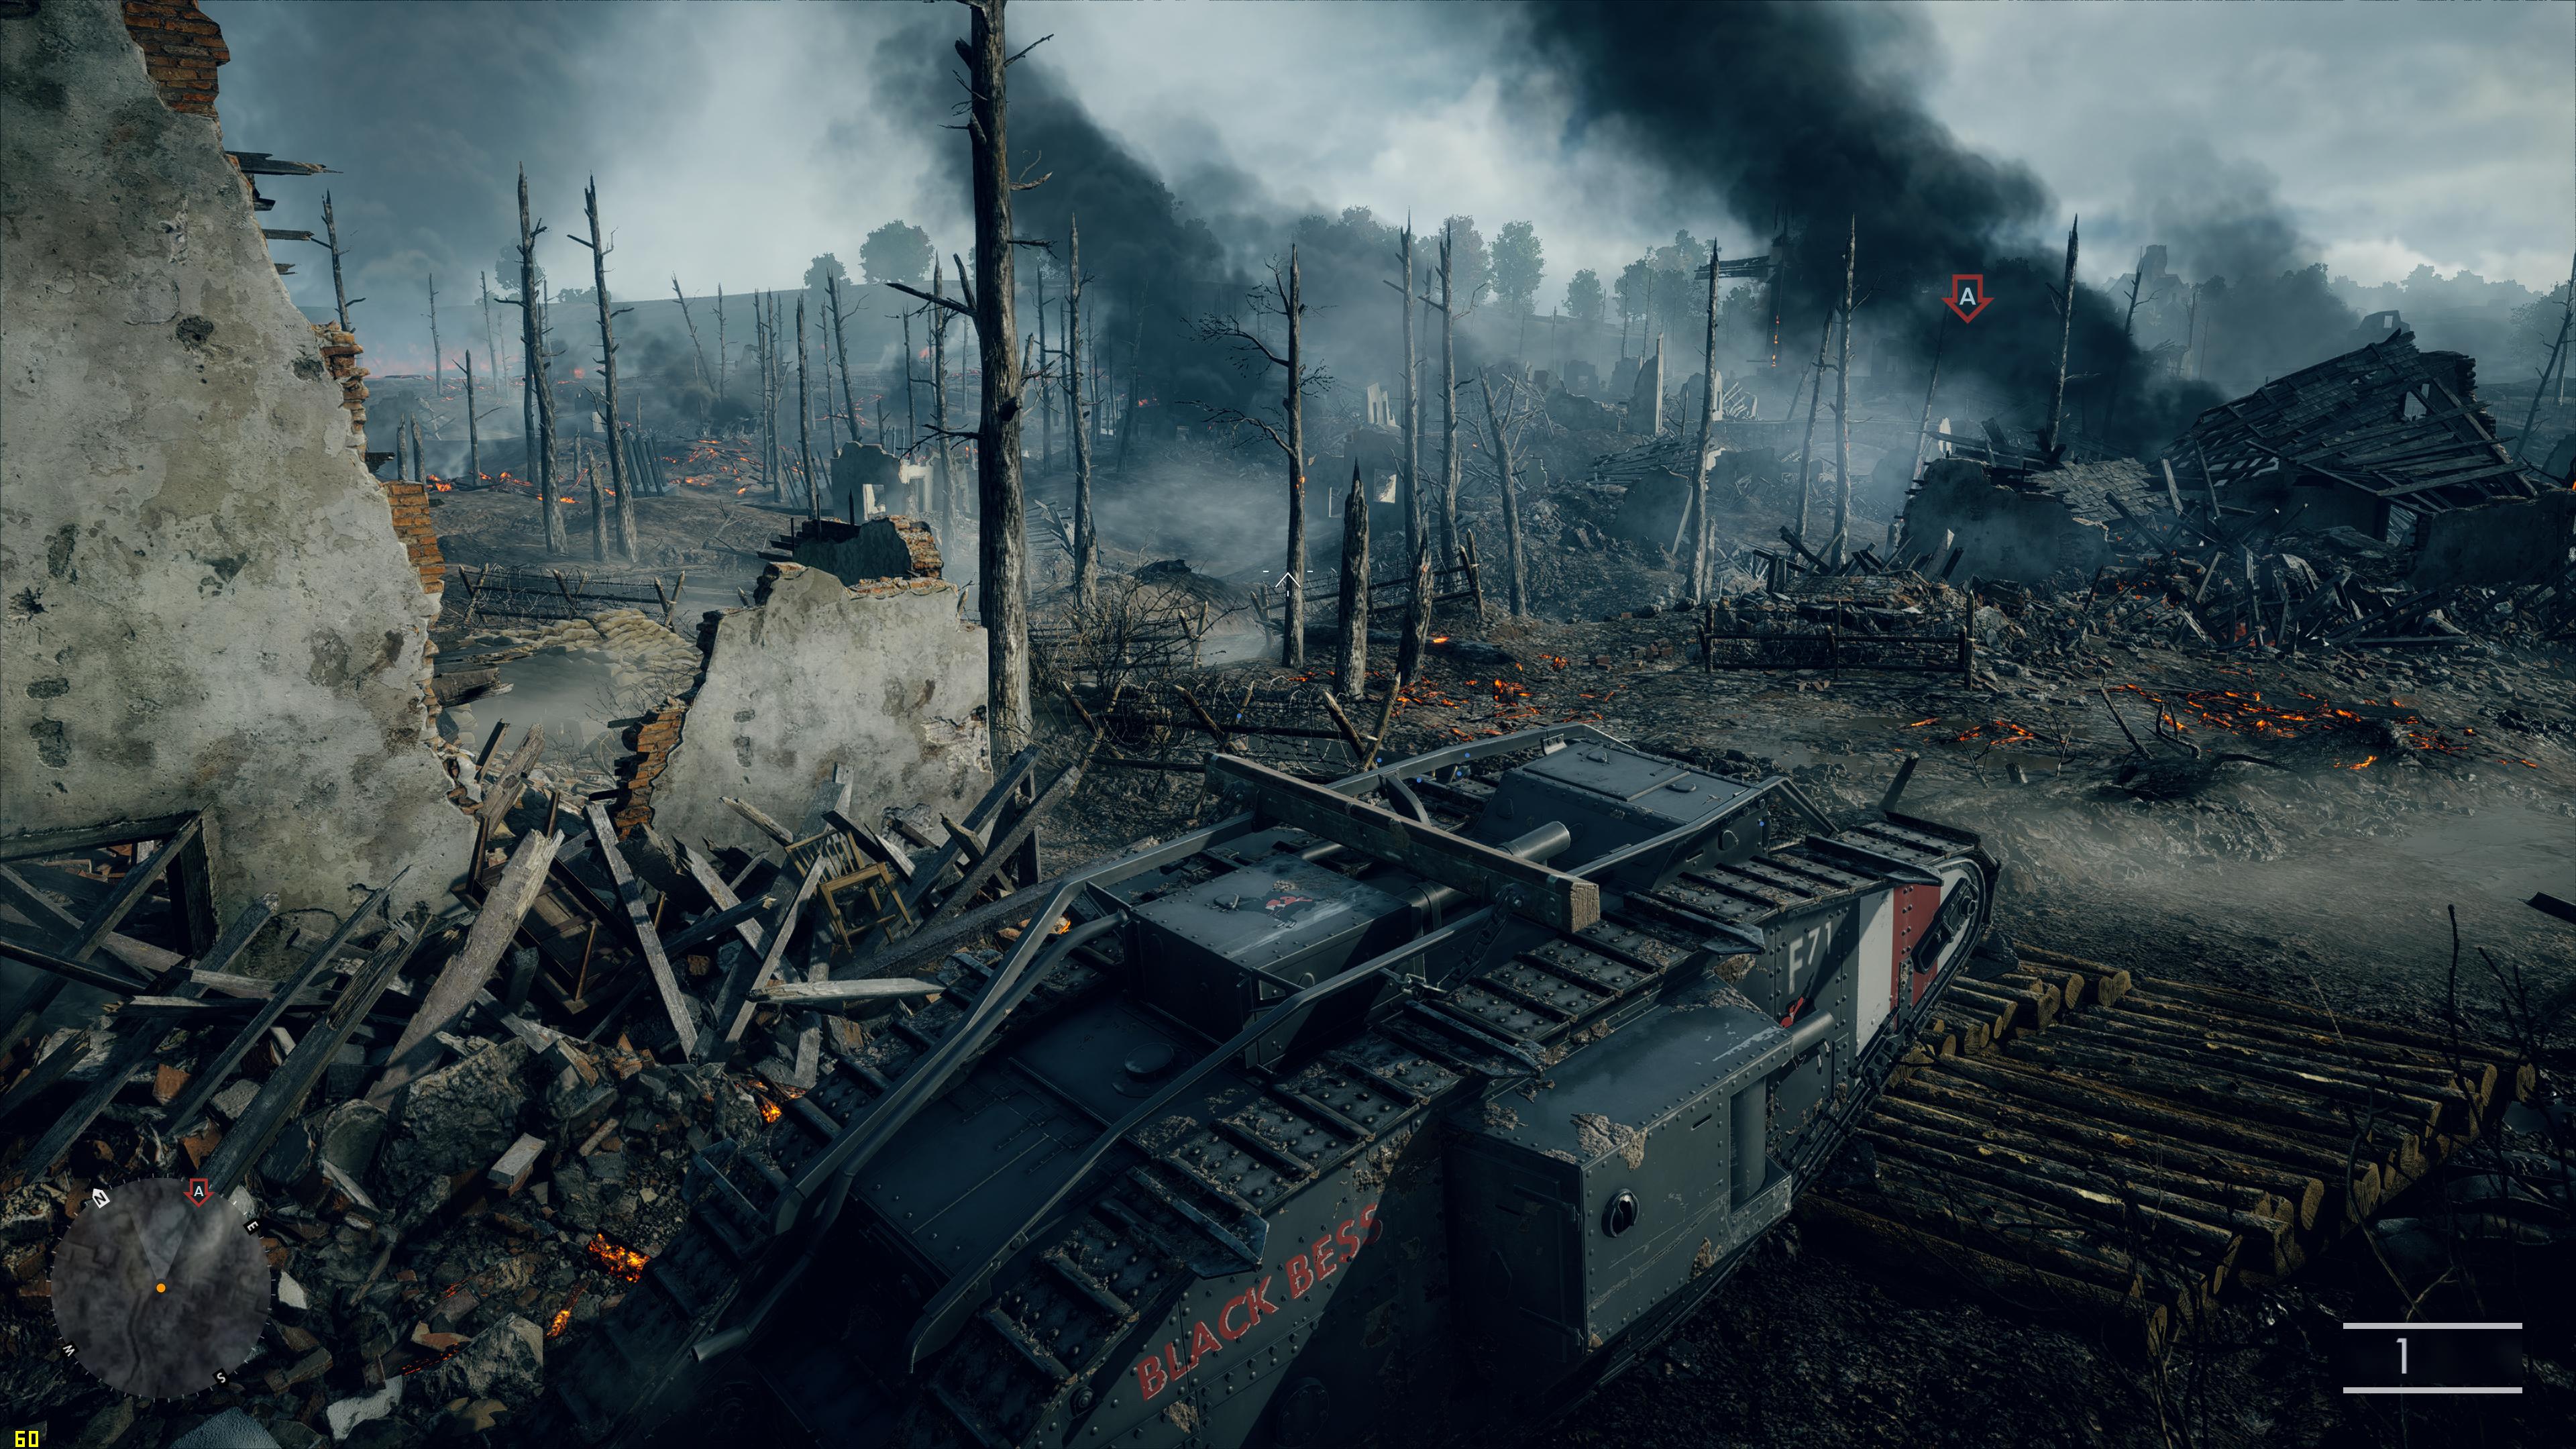 EA estaria considerando um cross-play para o Battlefield V?